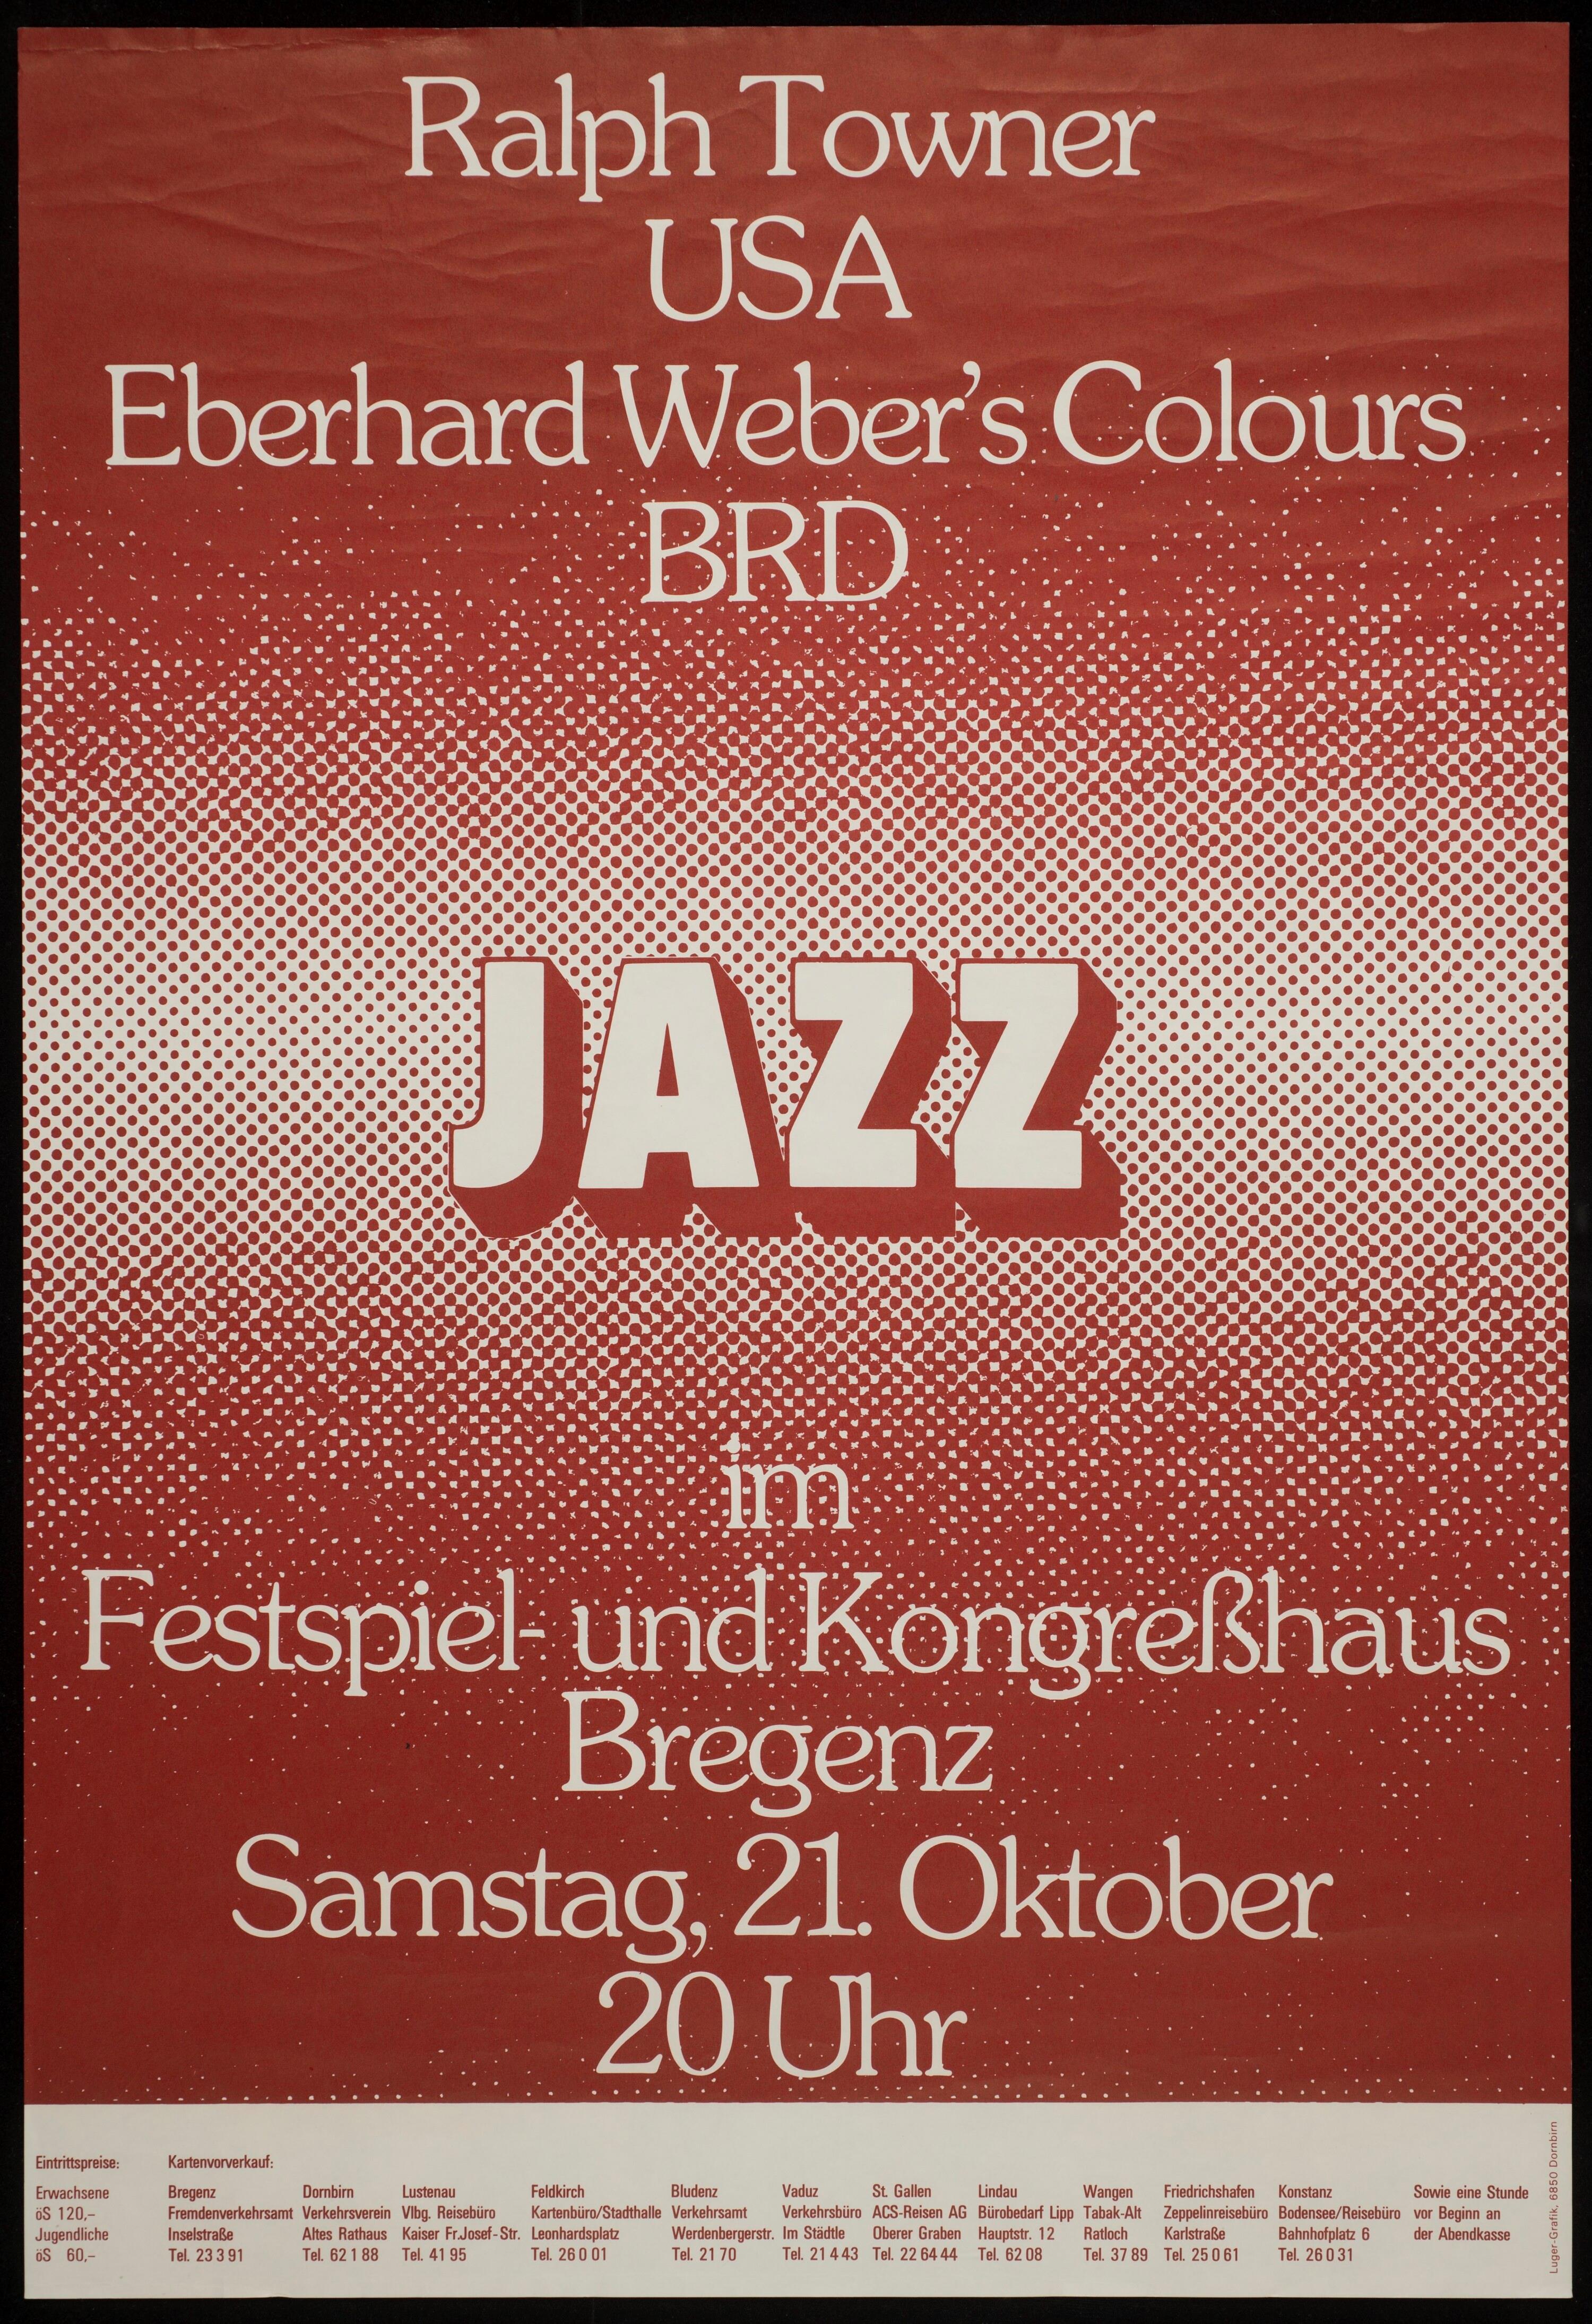 Jazz im Festspiel- und Kongreßhaus Bregenz></div>


    <hr>
    <div class=